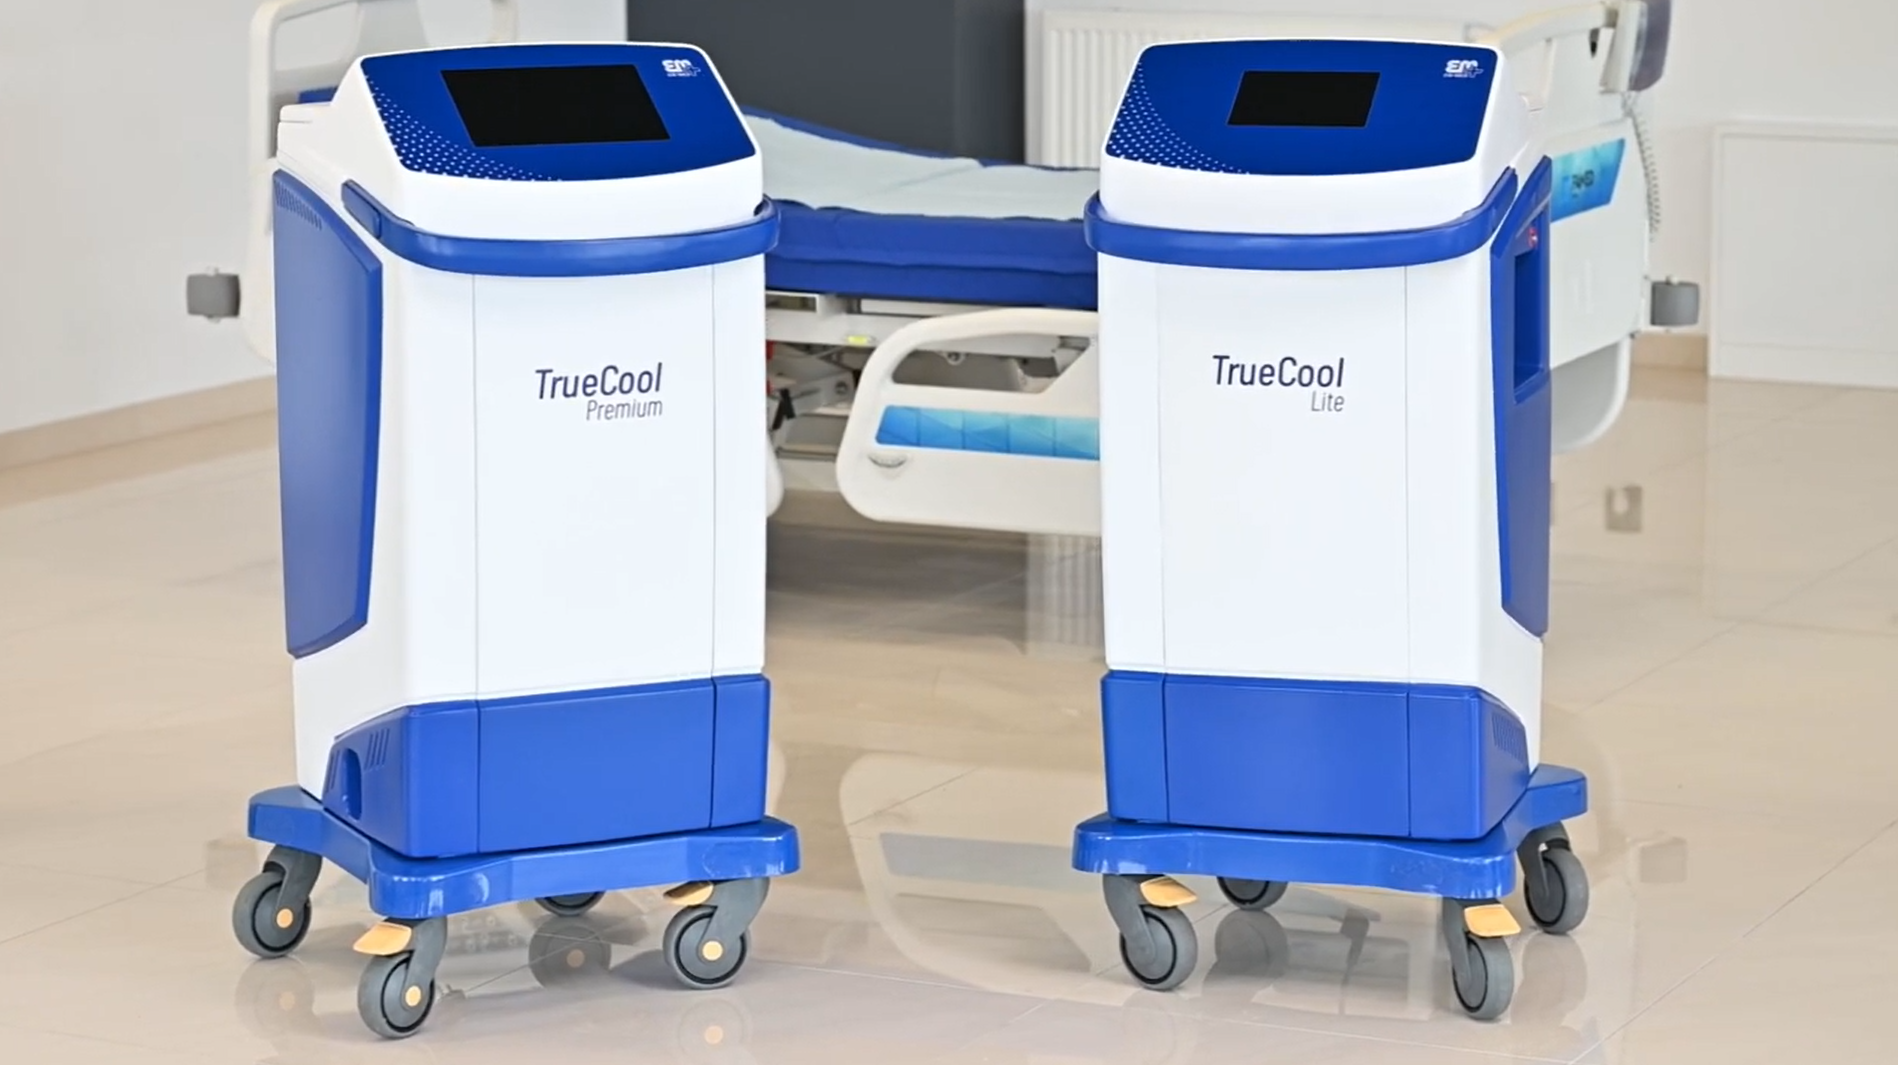 Aparaty do ogrzewania - ochładzania (hipotermii) pacjenta EM-MED TrueCool Premium / TrueCool Lite